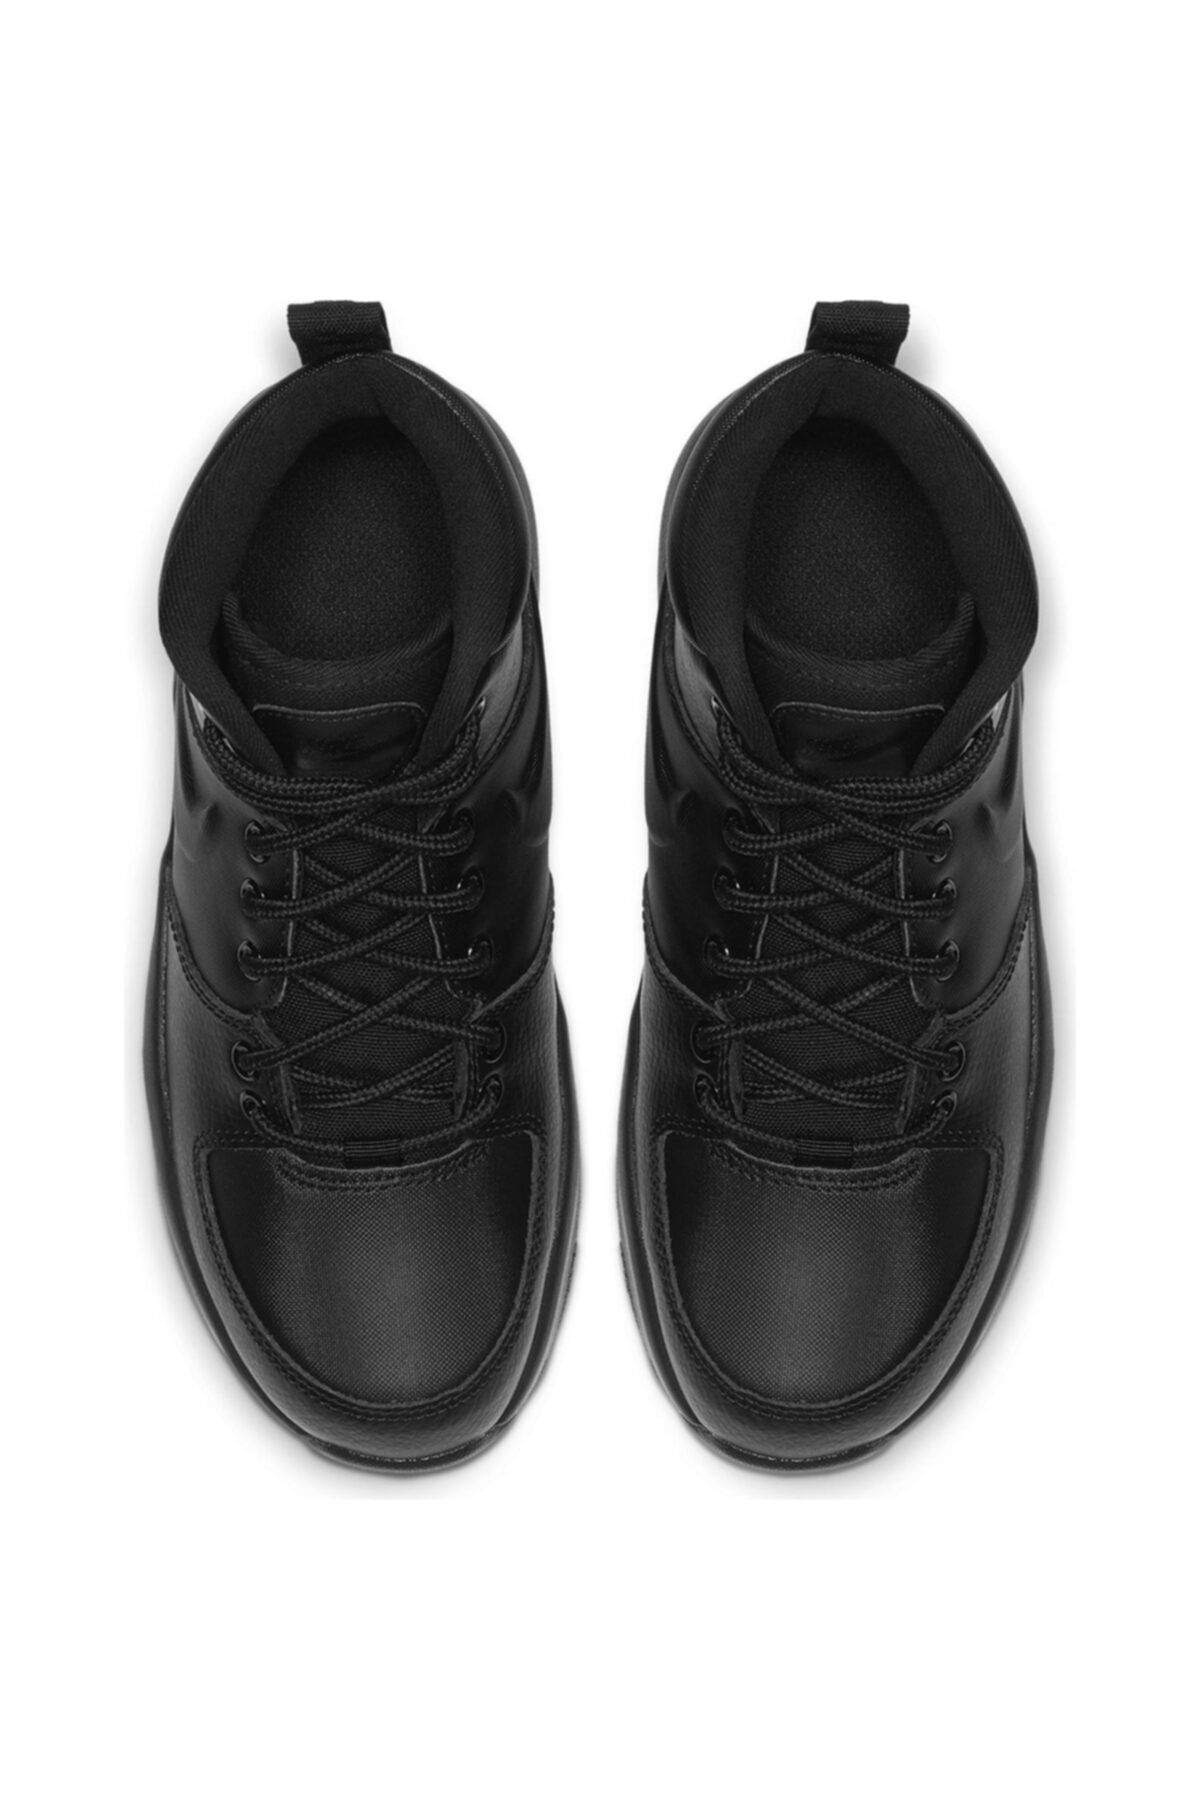 Nike Manoa Ltr (gs) Unisex Siyah Outdoor Ayakkabı Bq5372-001